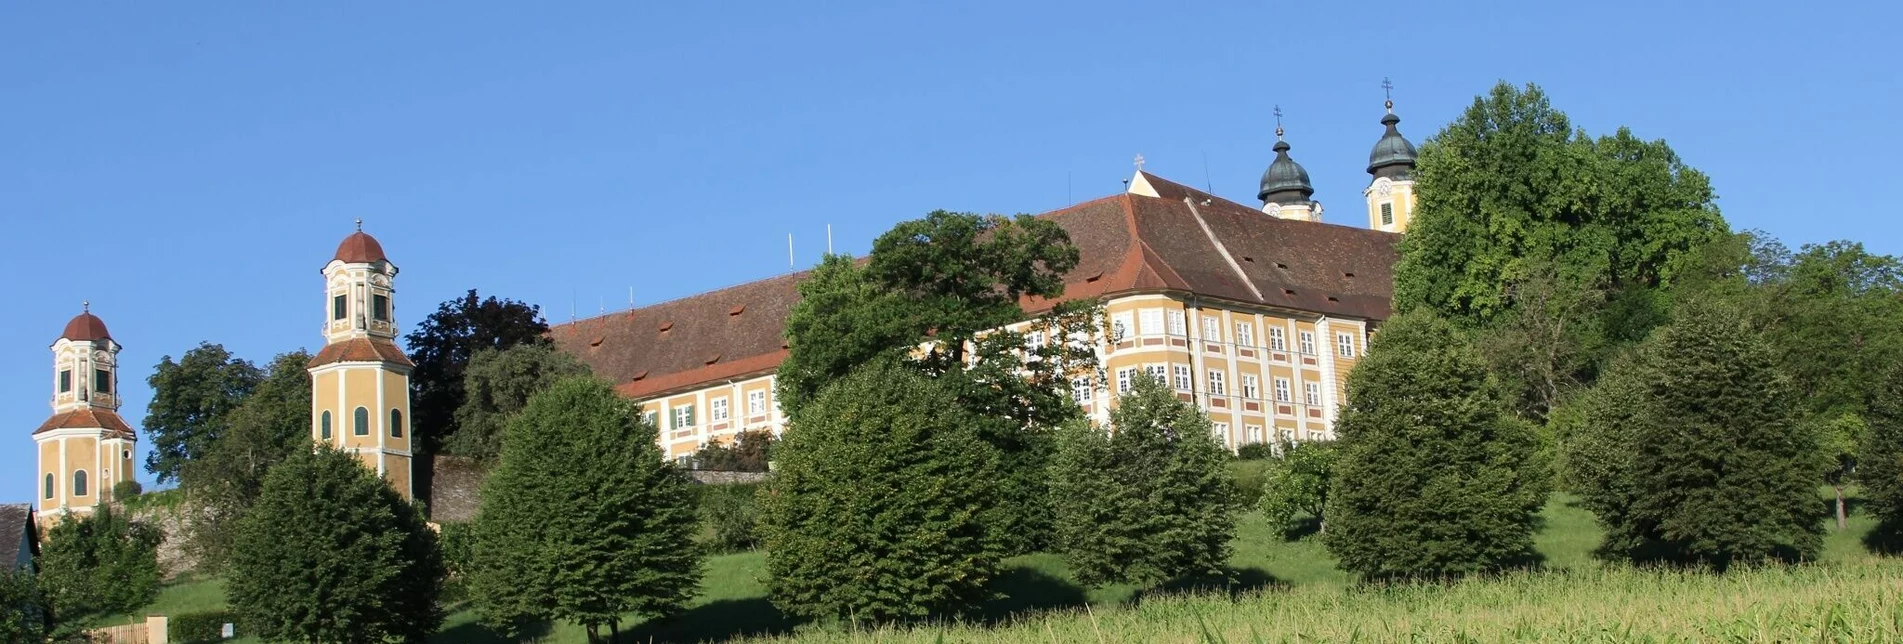 Wanderung Schilcherrundweg – über Schloss Stainz/Bründlwald - Touren-Impression #1 | © Schilcherland Steiermark